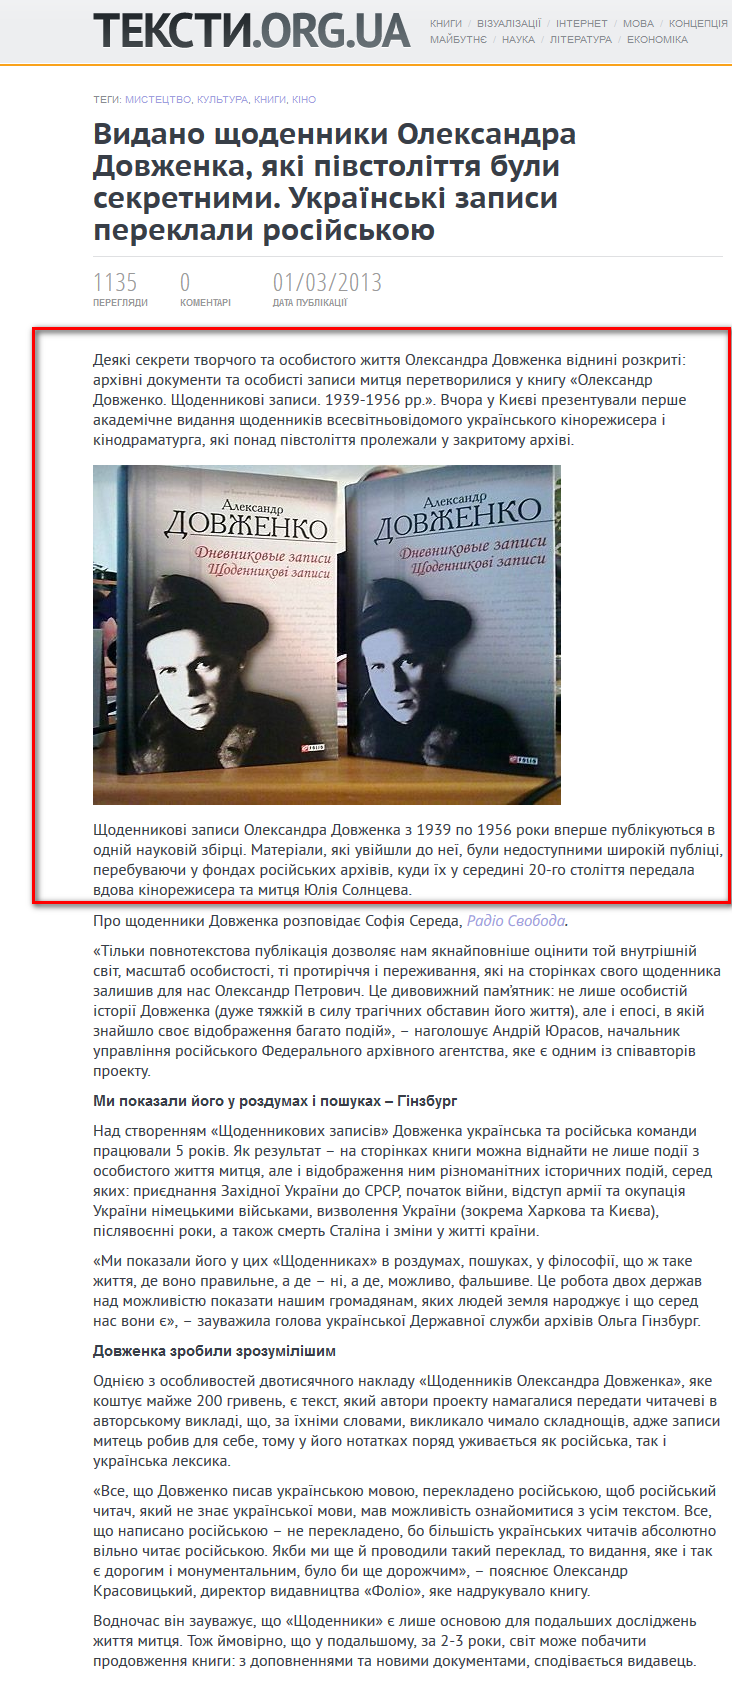 http://texty.org.ua/pg/news/movchun/read/43849/Vydano_shhodennyky_Oleksandra_Dovzhenka_jaki_pivstolitta_buly